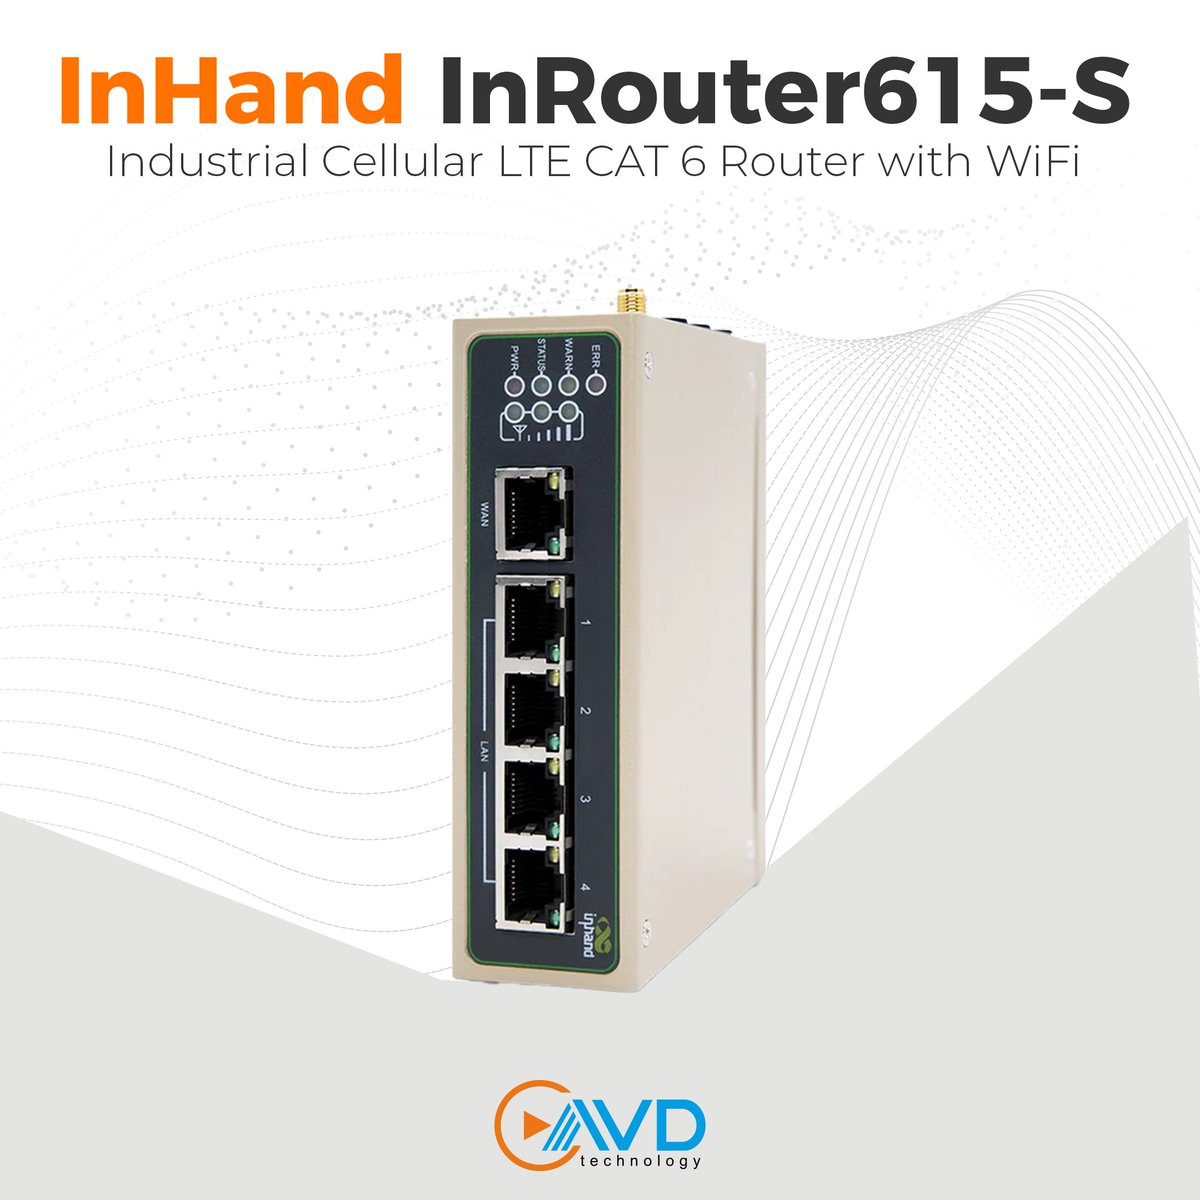 InRouter615-S endüstriyel LTE CAT6 Router ile Network Yapılarınıza uzaktan erişin, yönetin ve yapılandırın!

IR615-S Gelişmiş Endüstriyel Router, 5 Ethernet bağlantı noktası, seri bağlantı noktaları ve WiFi arayüzü sunar.